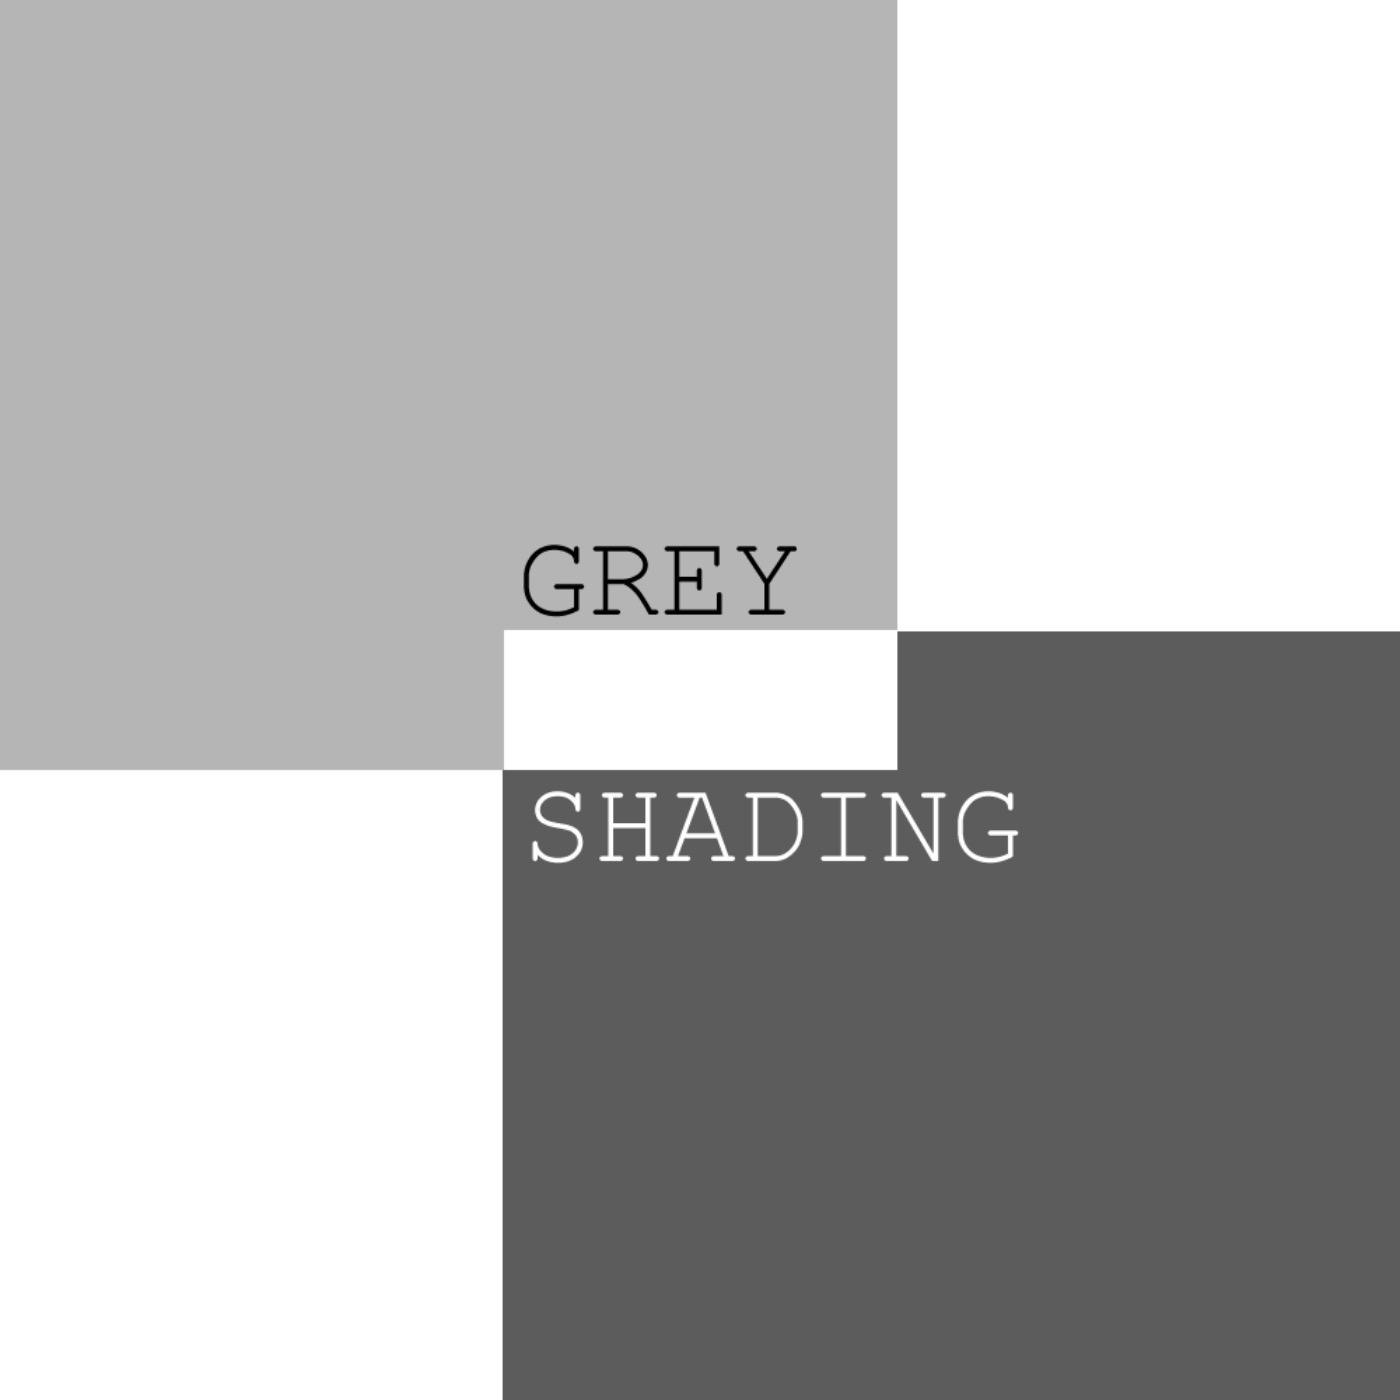 Greyshading